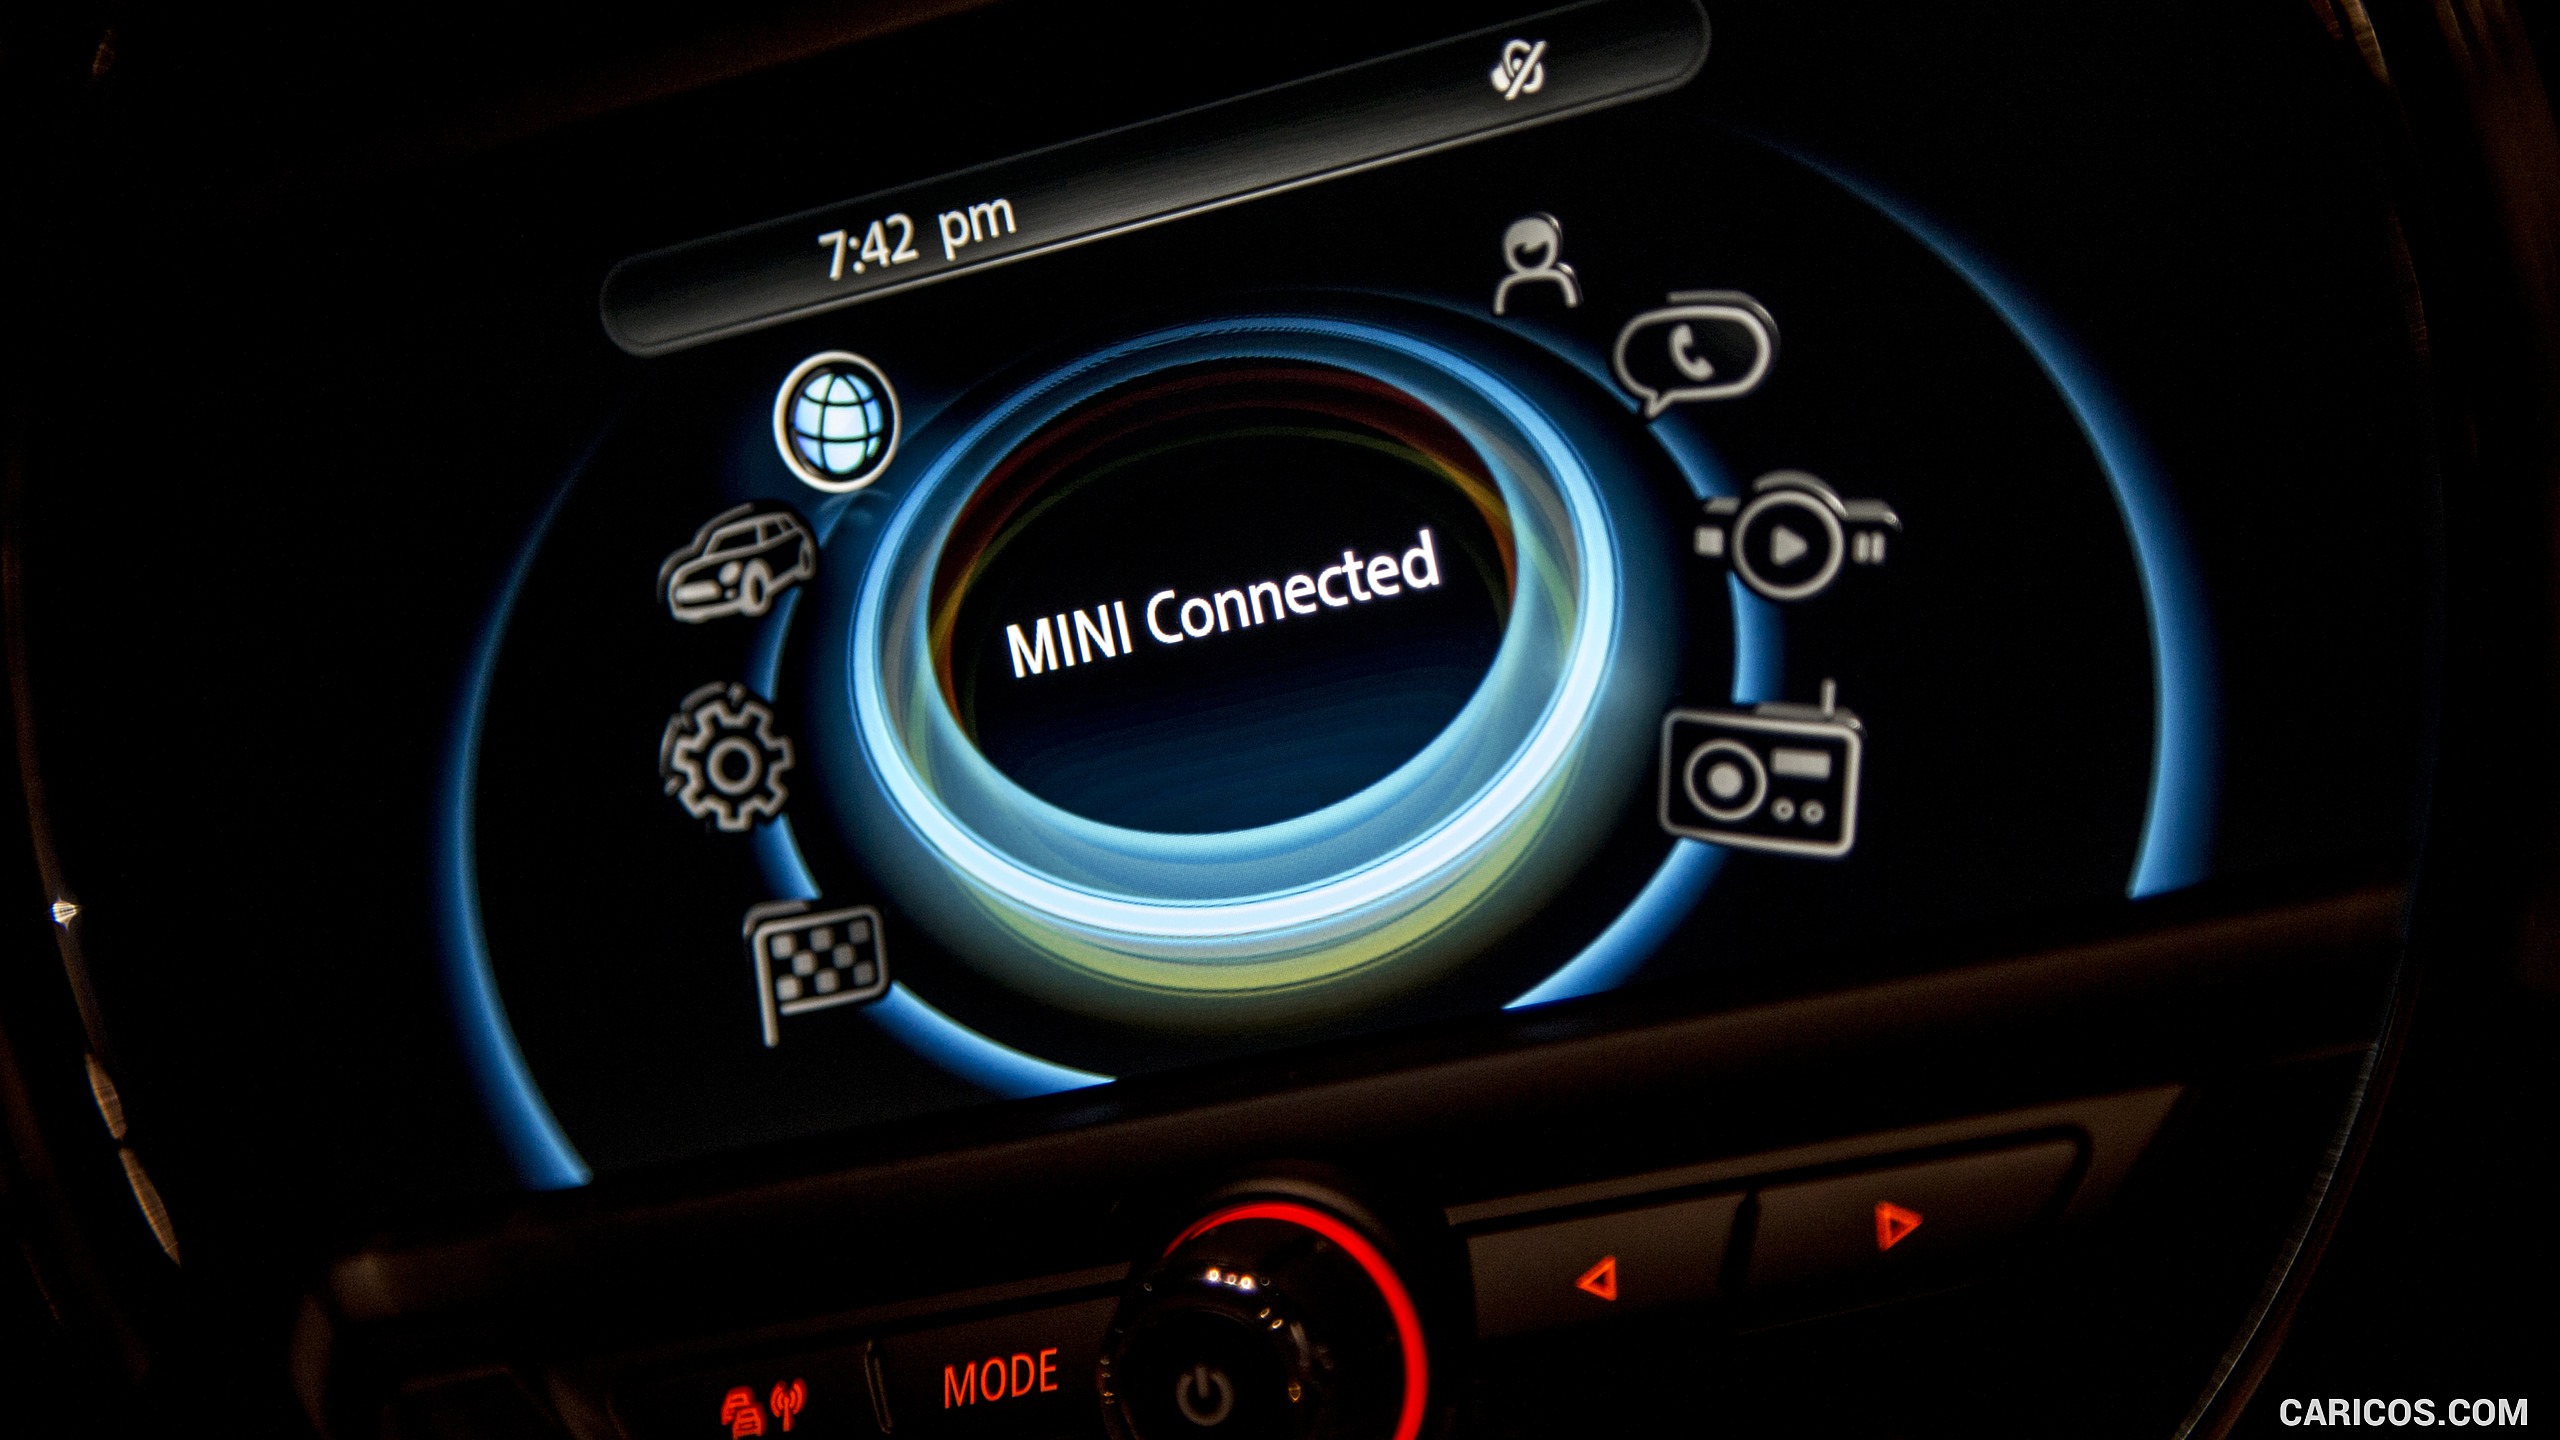 2016 MINI Cooper Clubman S (UK-Spec) - Central Console, #271 of 275